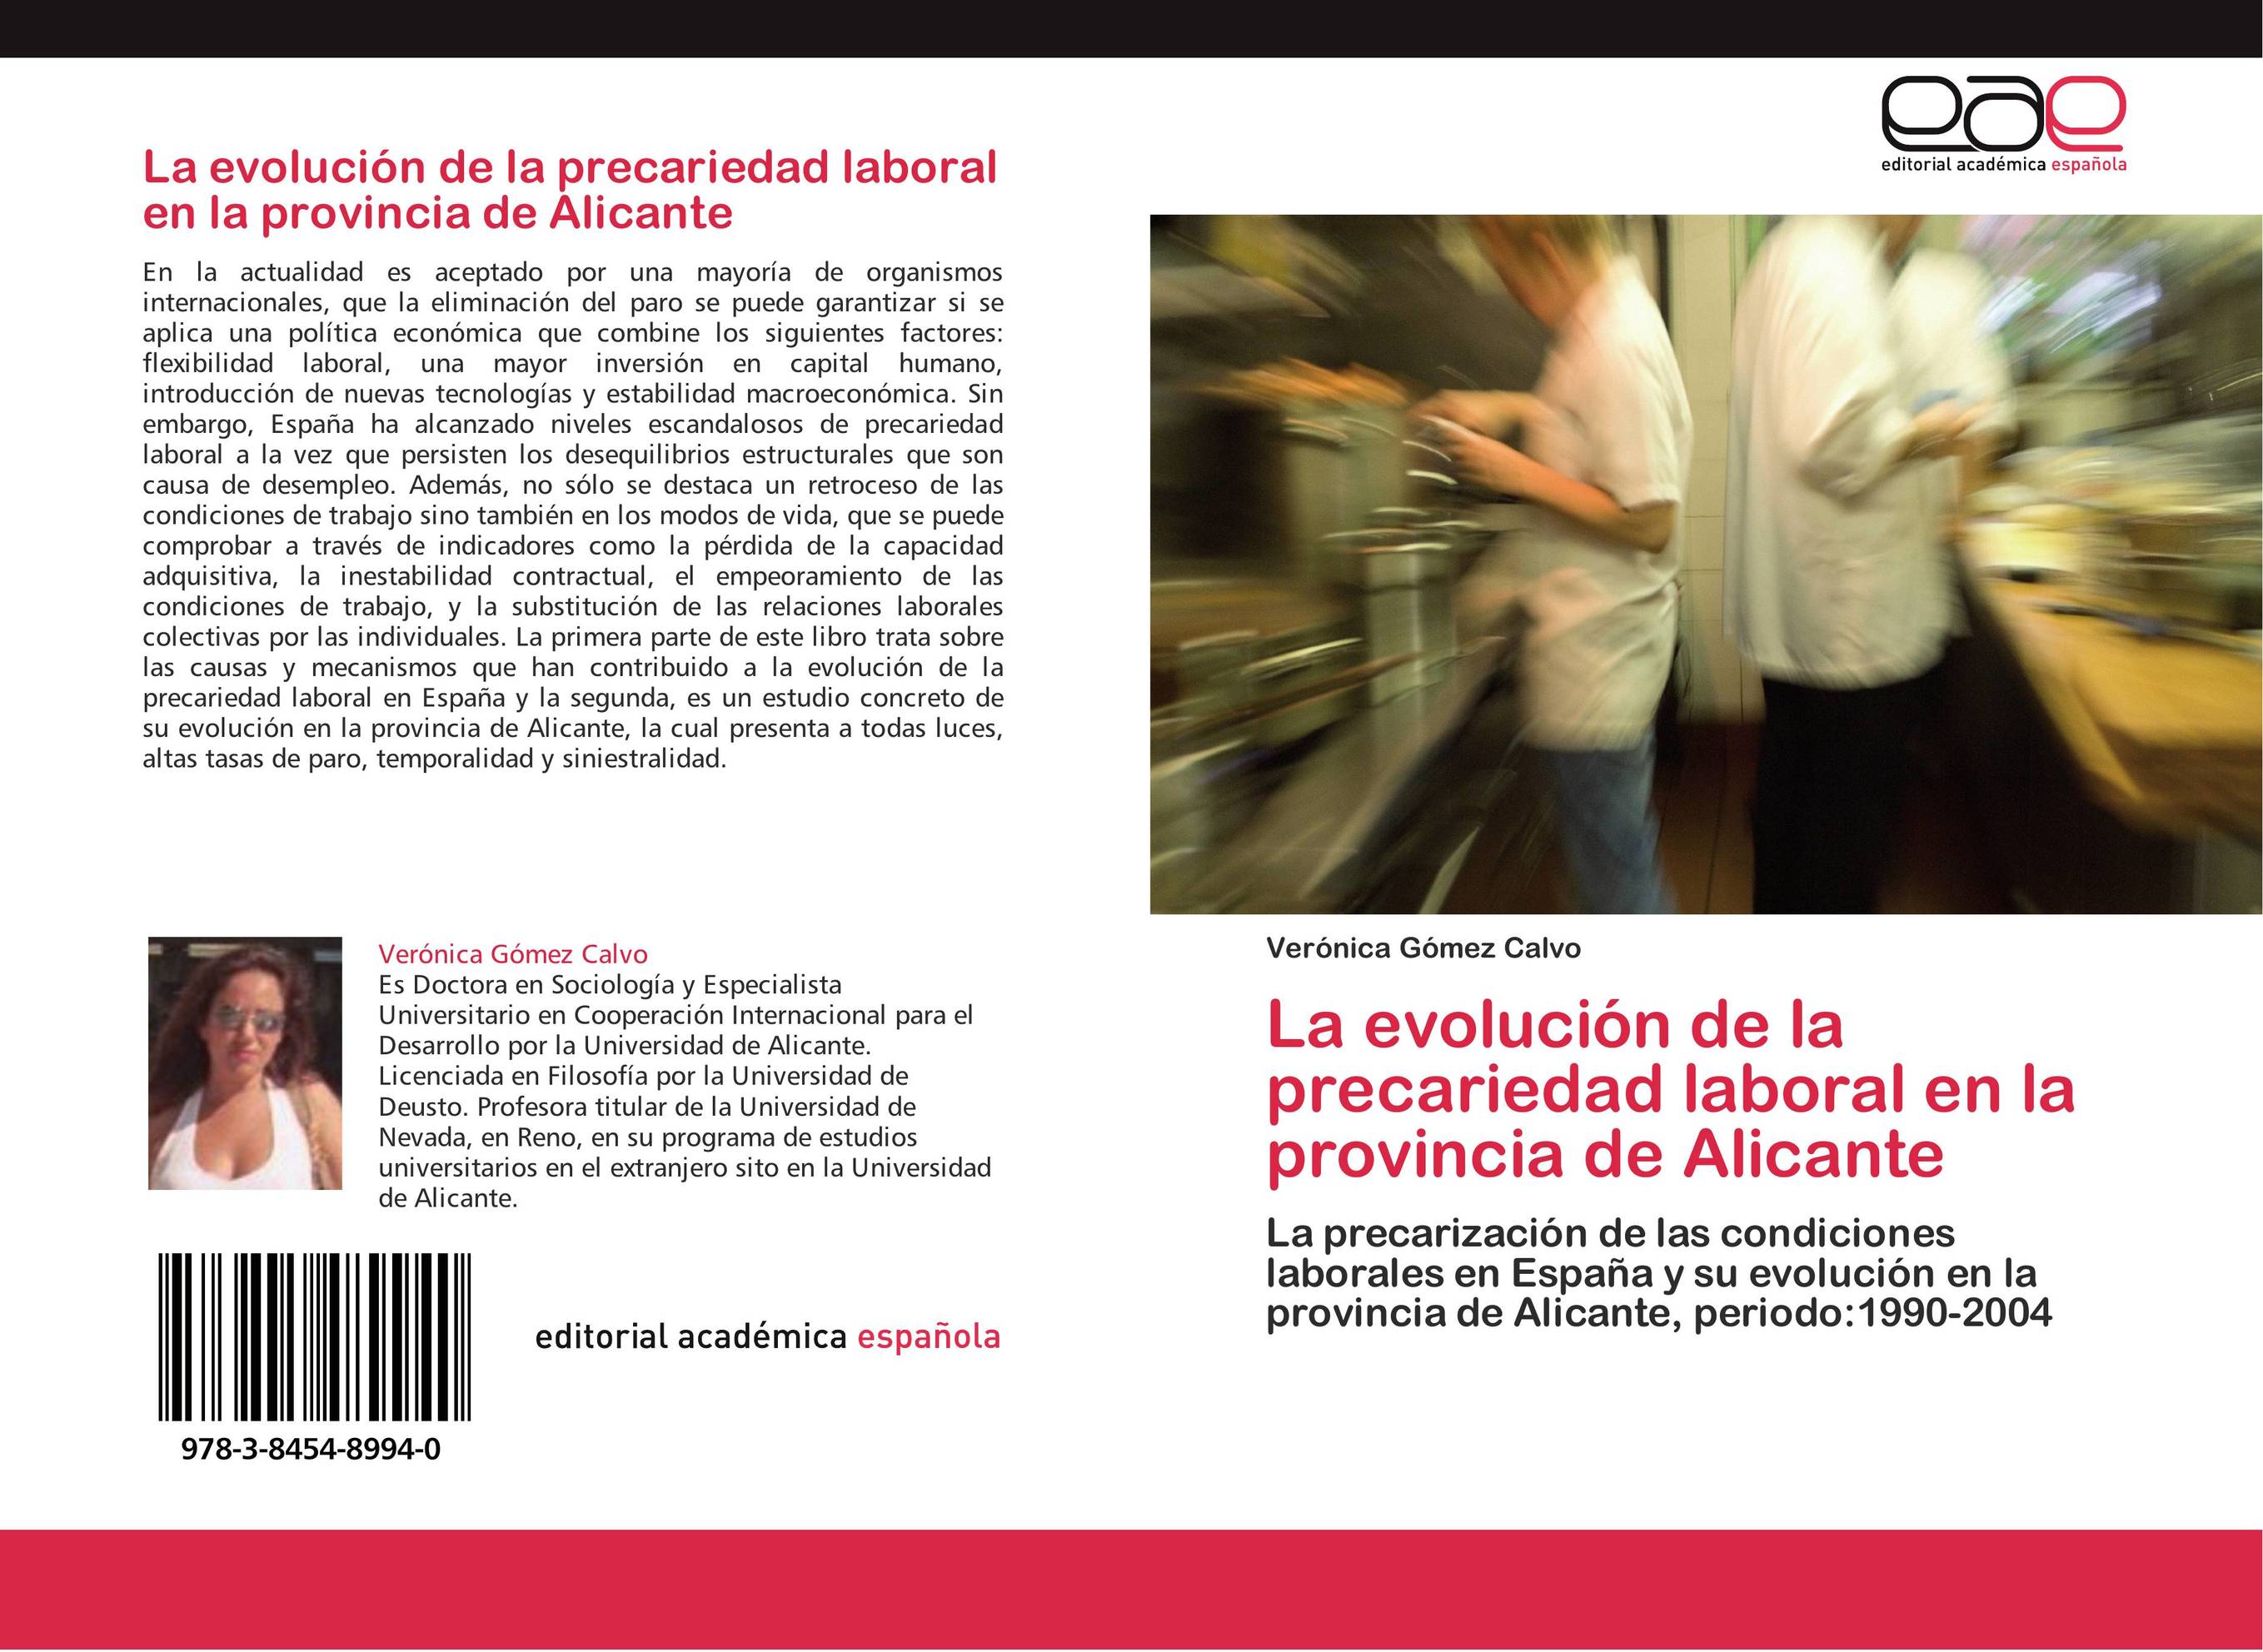 La evolución de la precariedad laboral en la provincia de Alicante